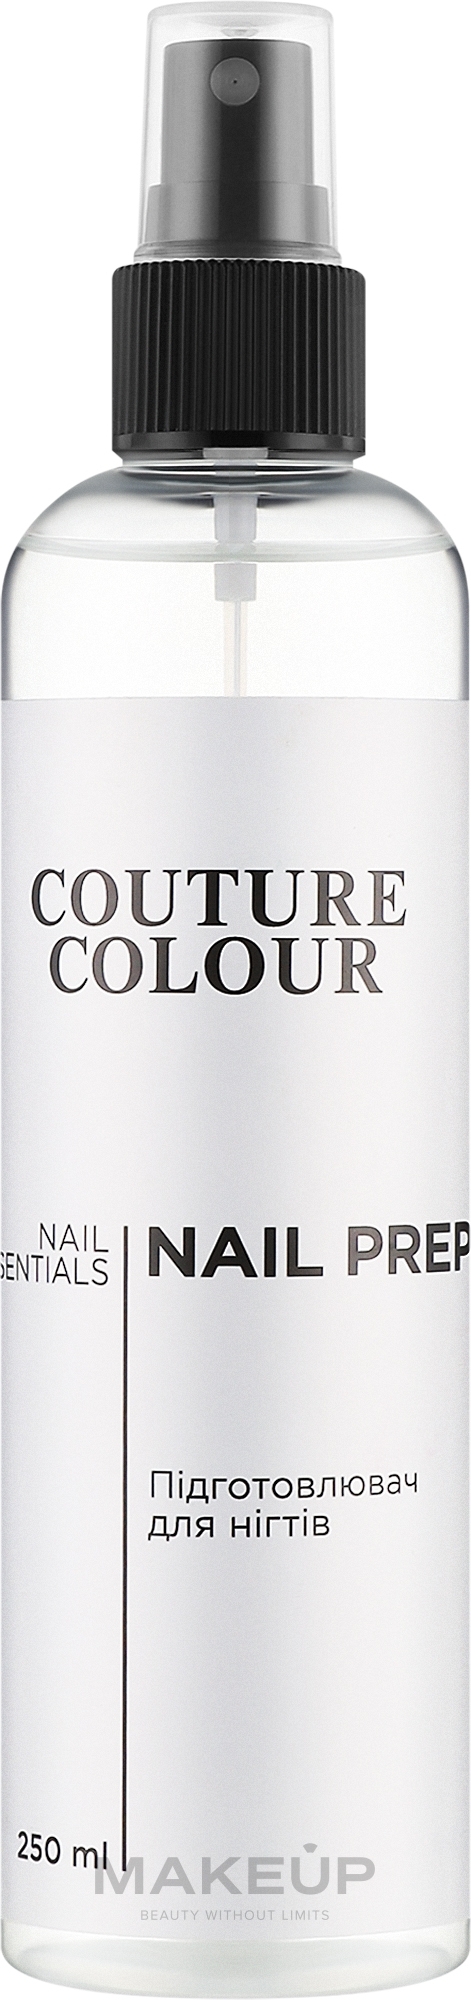 Підготовлювач нігтя - Couture Colour Nail Prep Fresher & Degreaser — фото 250ml